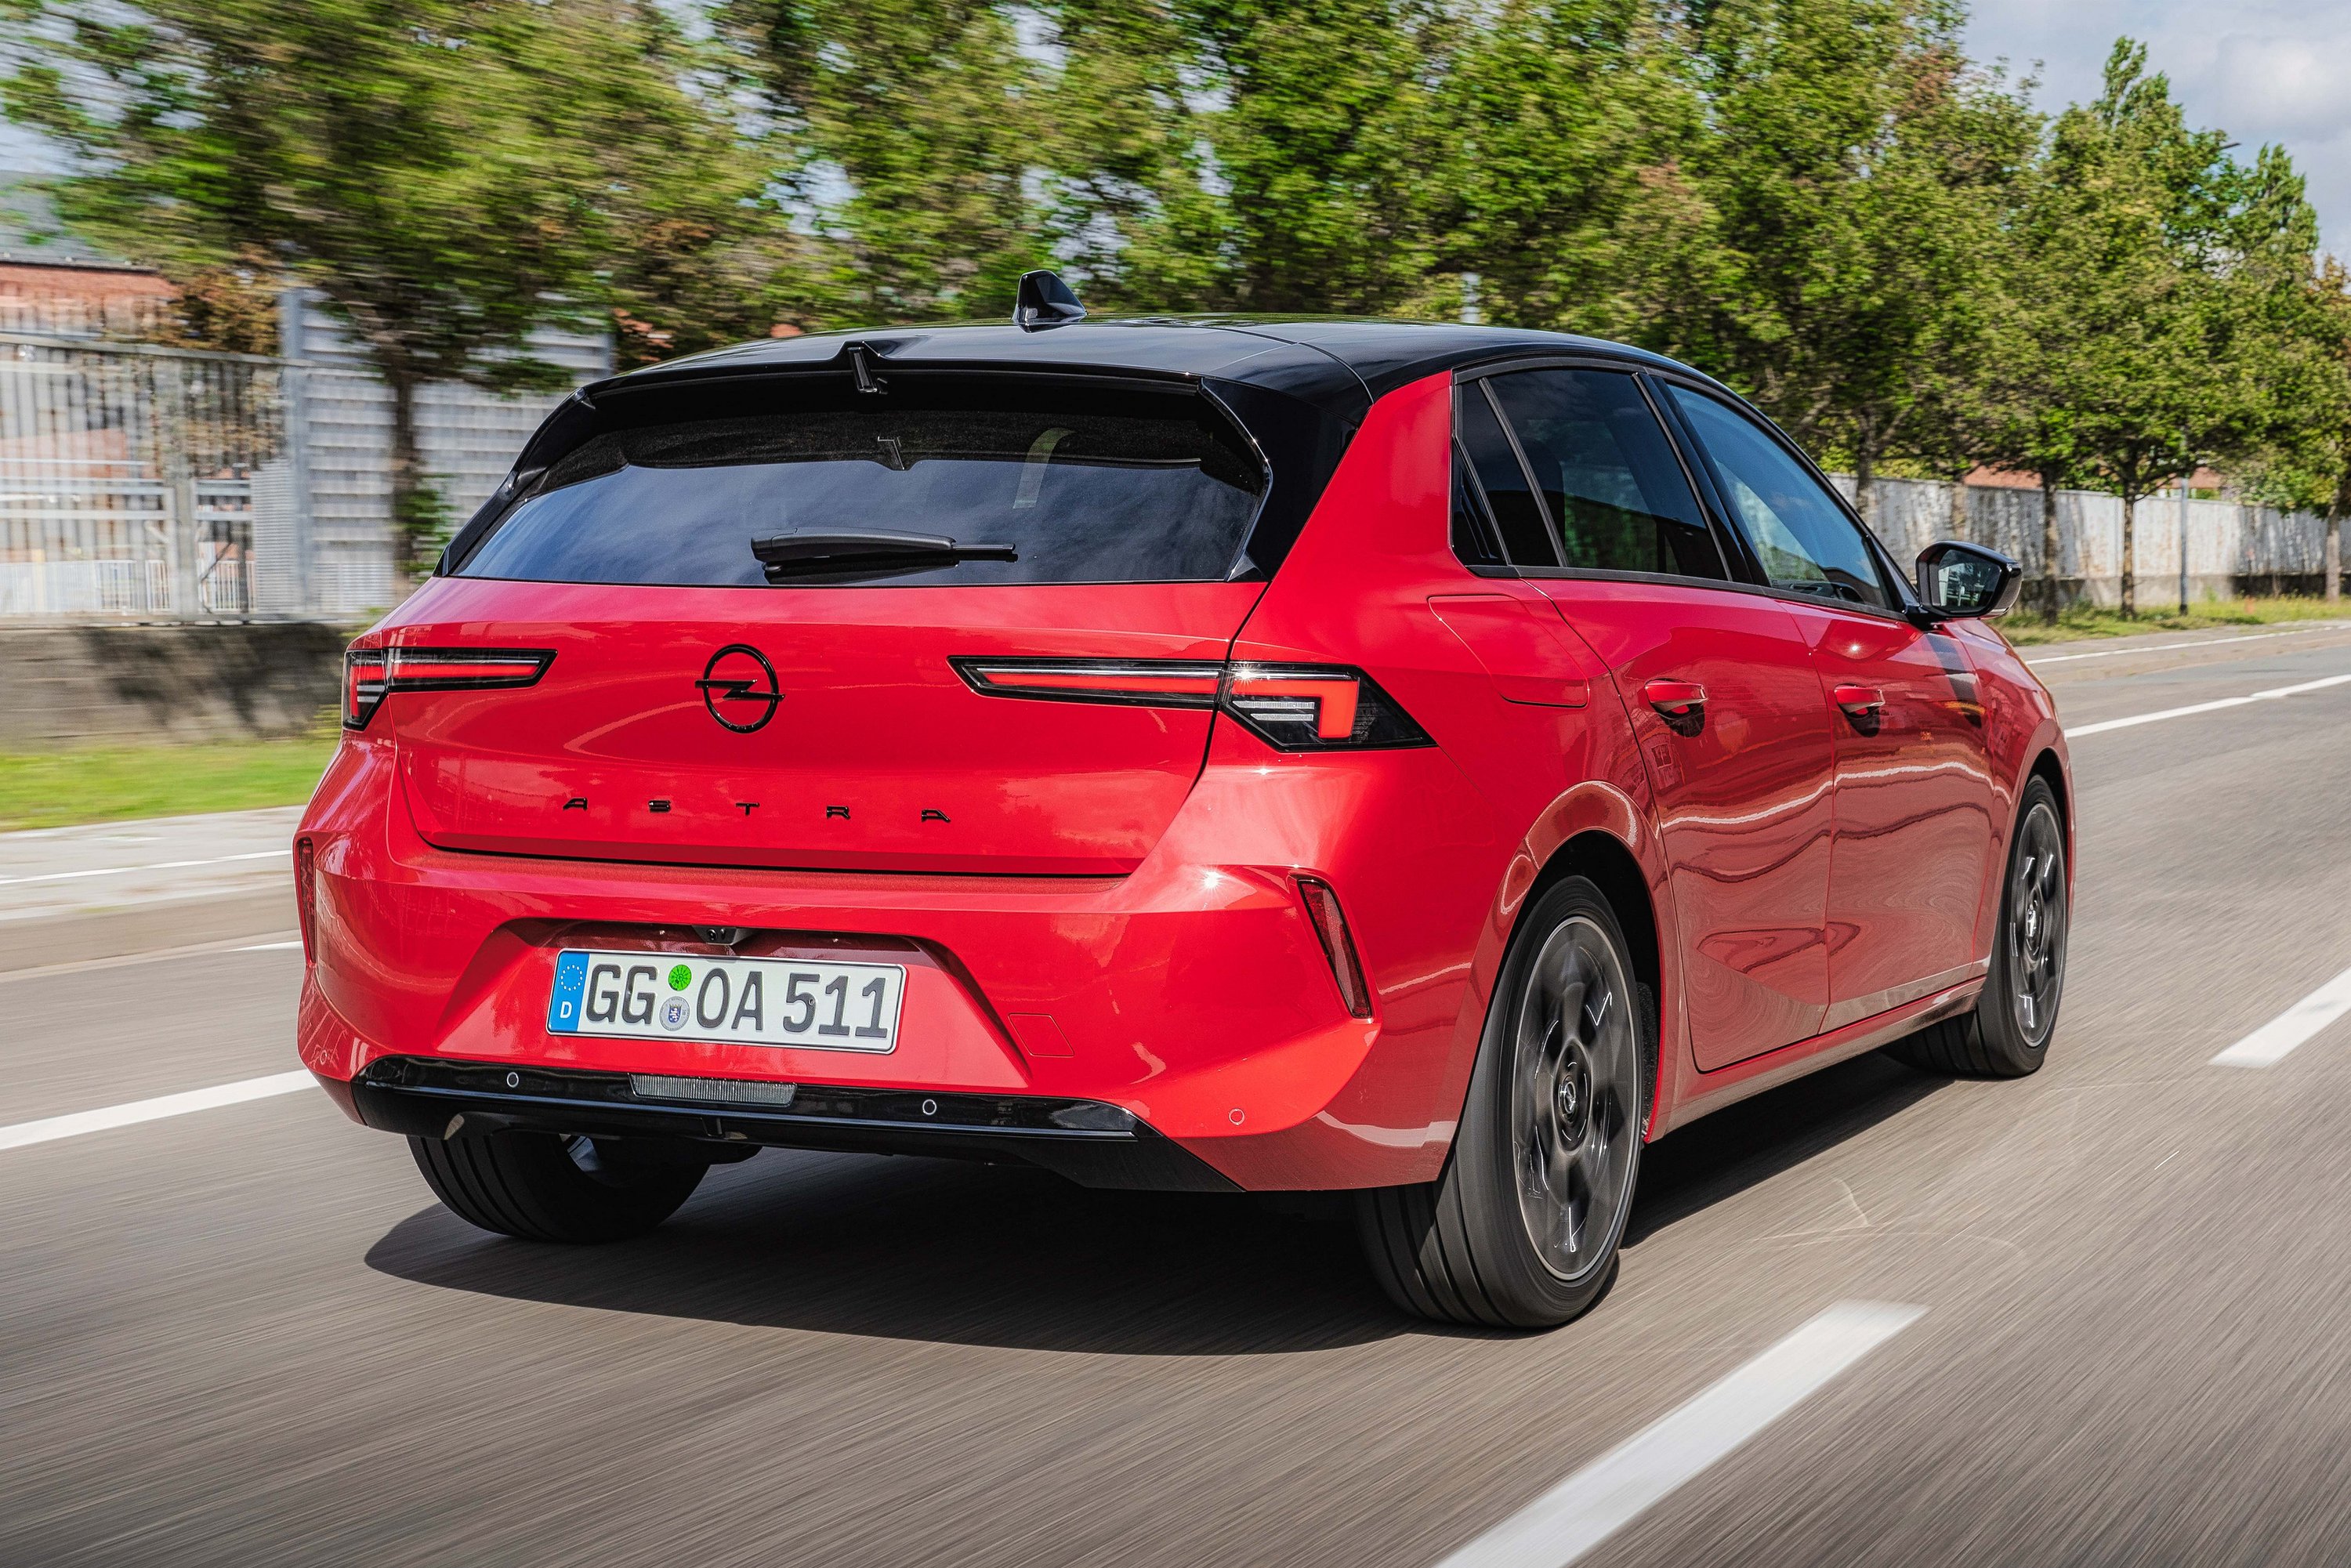 Fapados verzió nélkül rajtol itthon az új Opel Astra 8